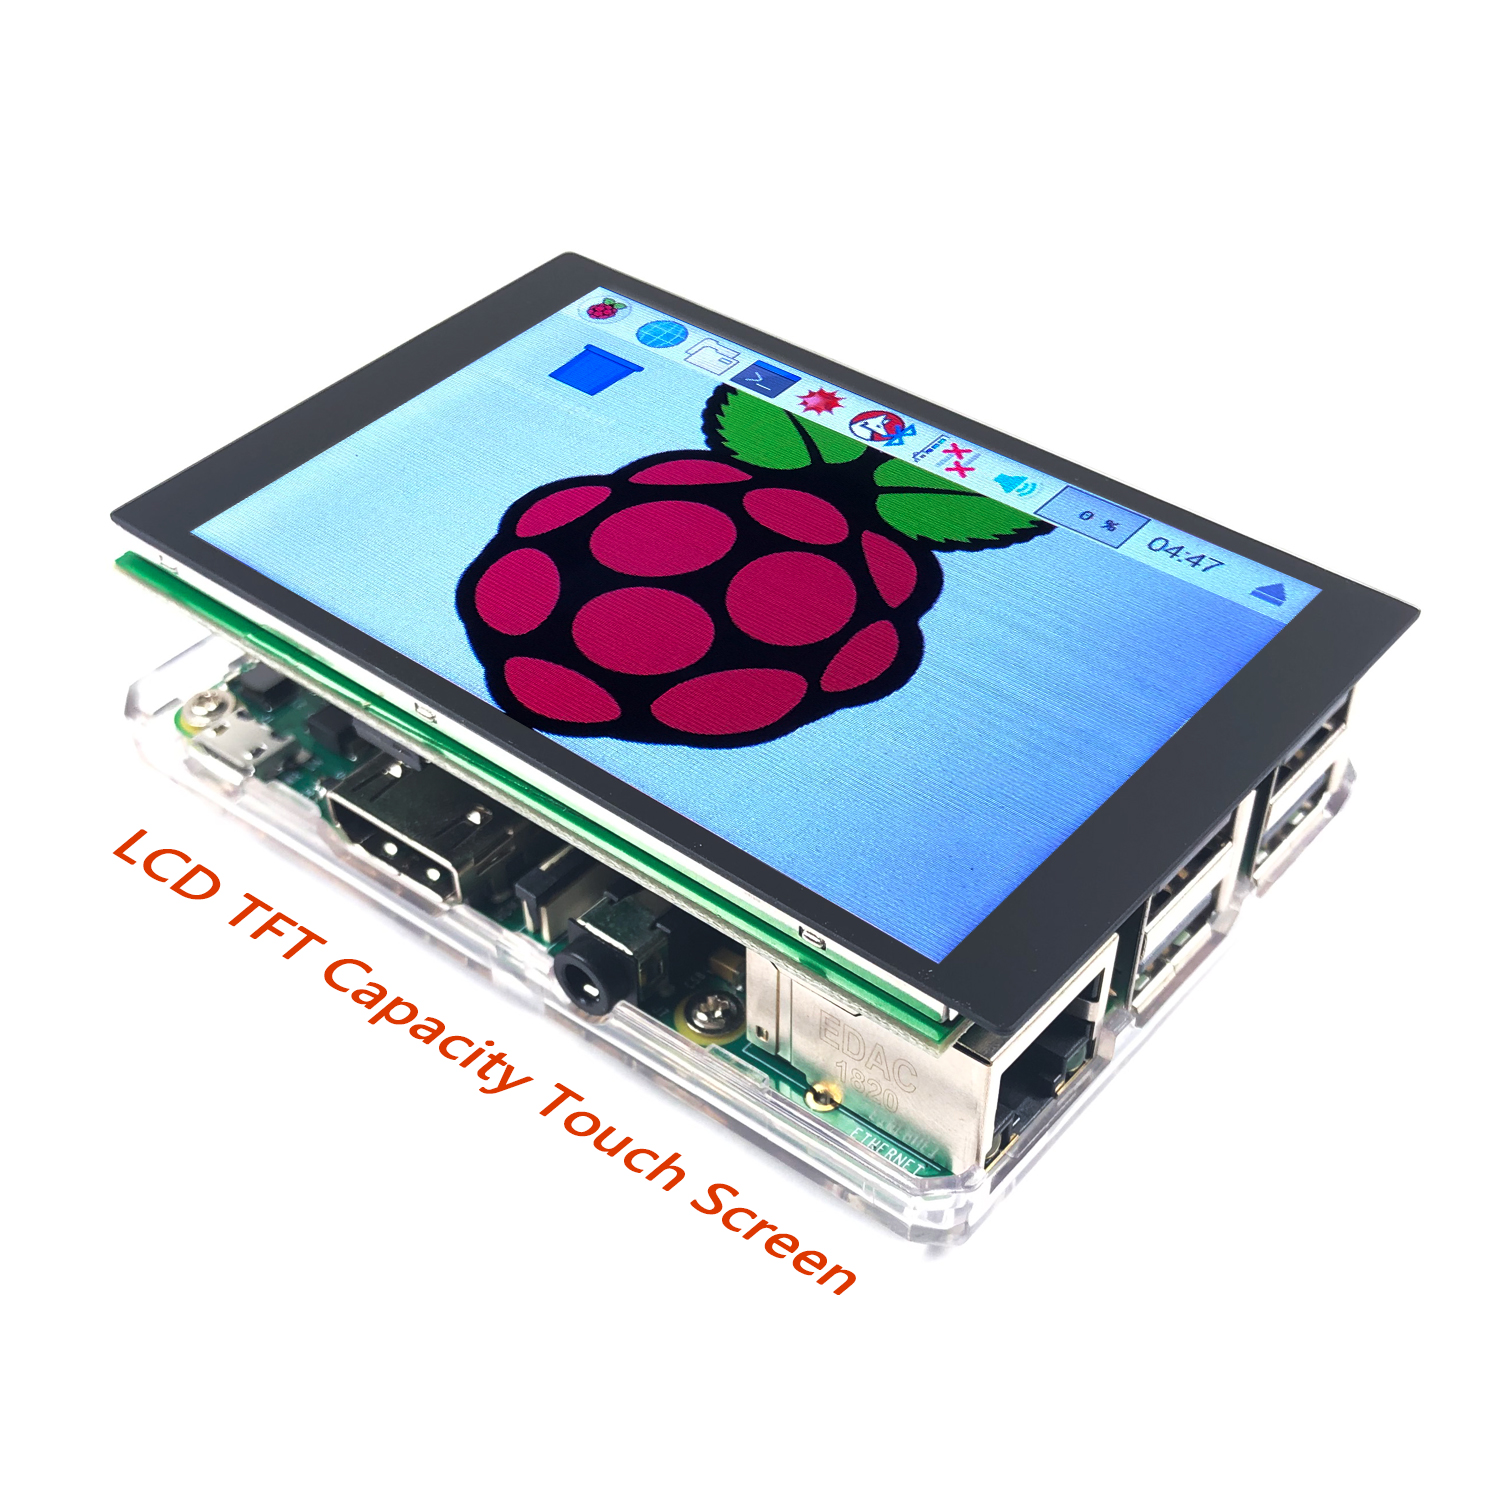 B Plus Semoic LCD MHS 3.5 Pouces Tft Appuyez sur LéCran avec SPI 50 Fps Affichage pour Raspberry Pi 3 ModèLe B/B